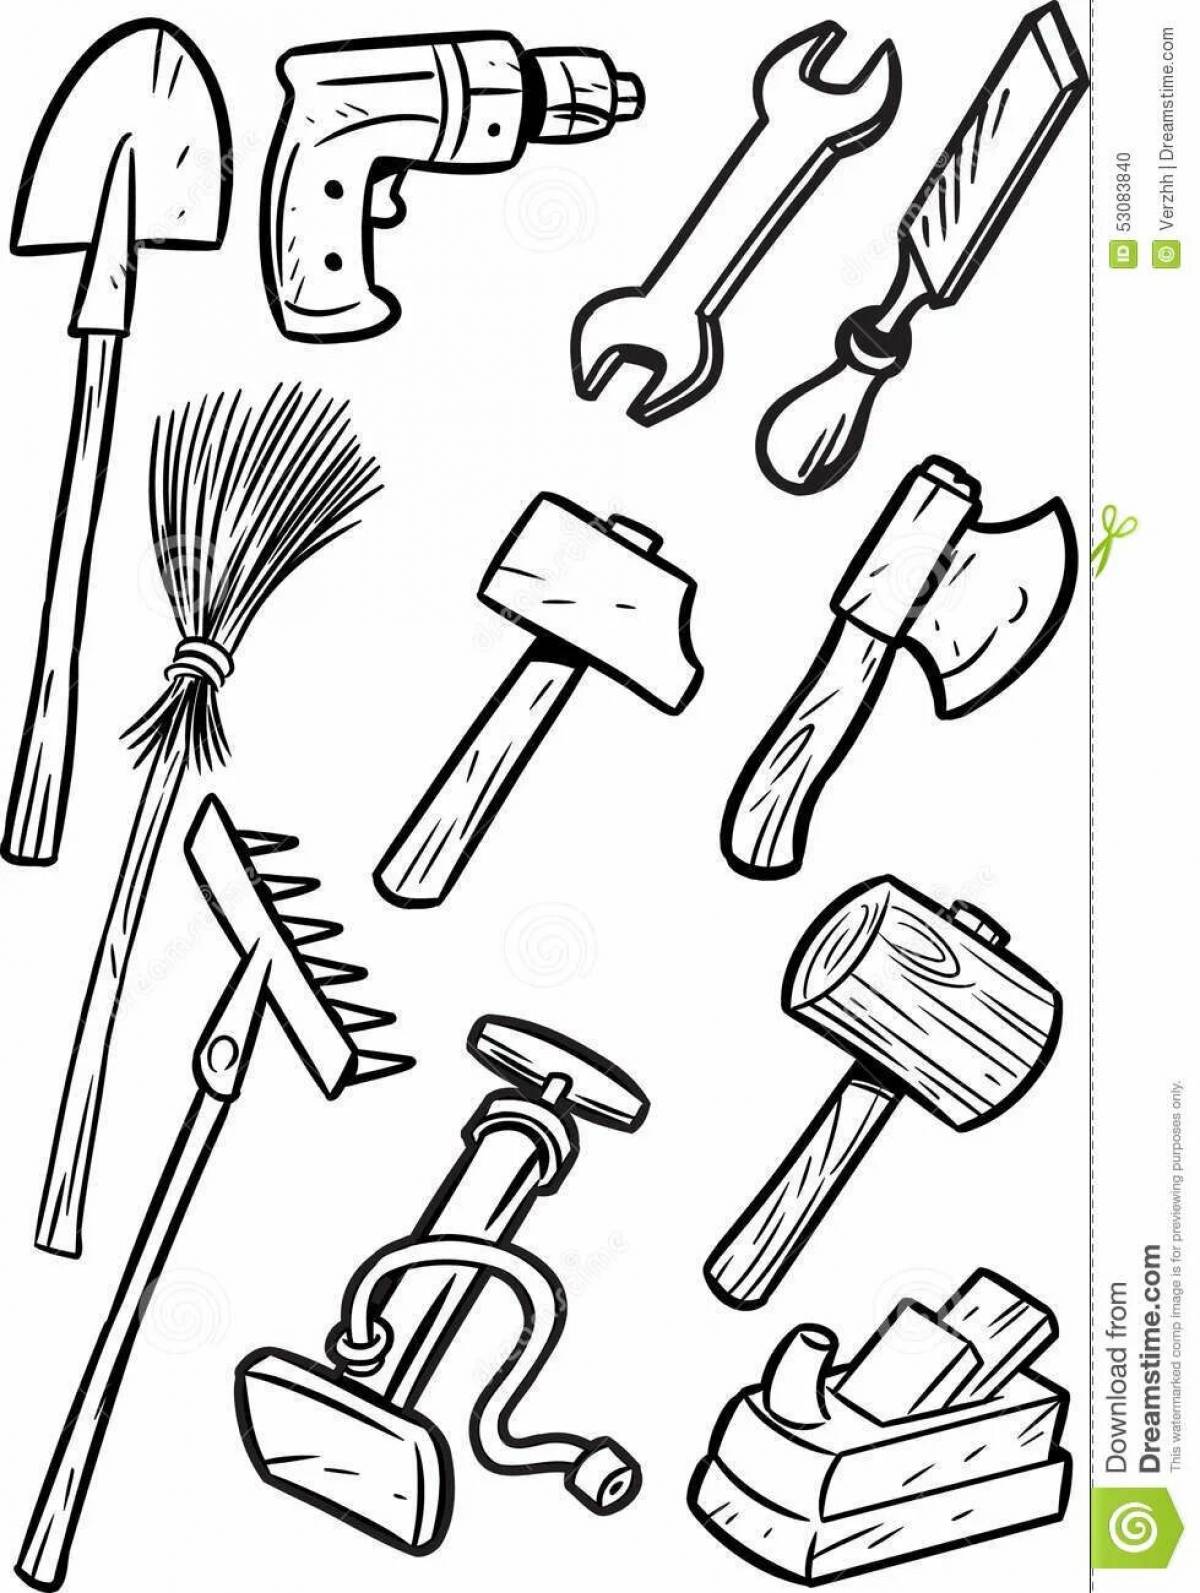 Tools tools #7